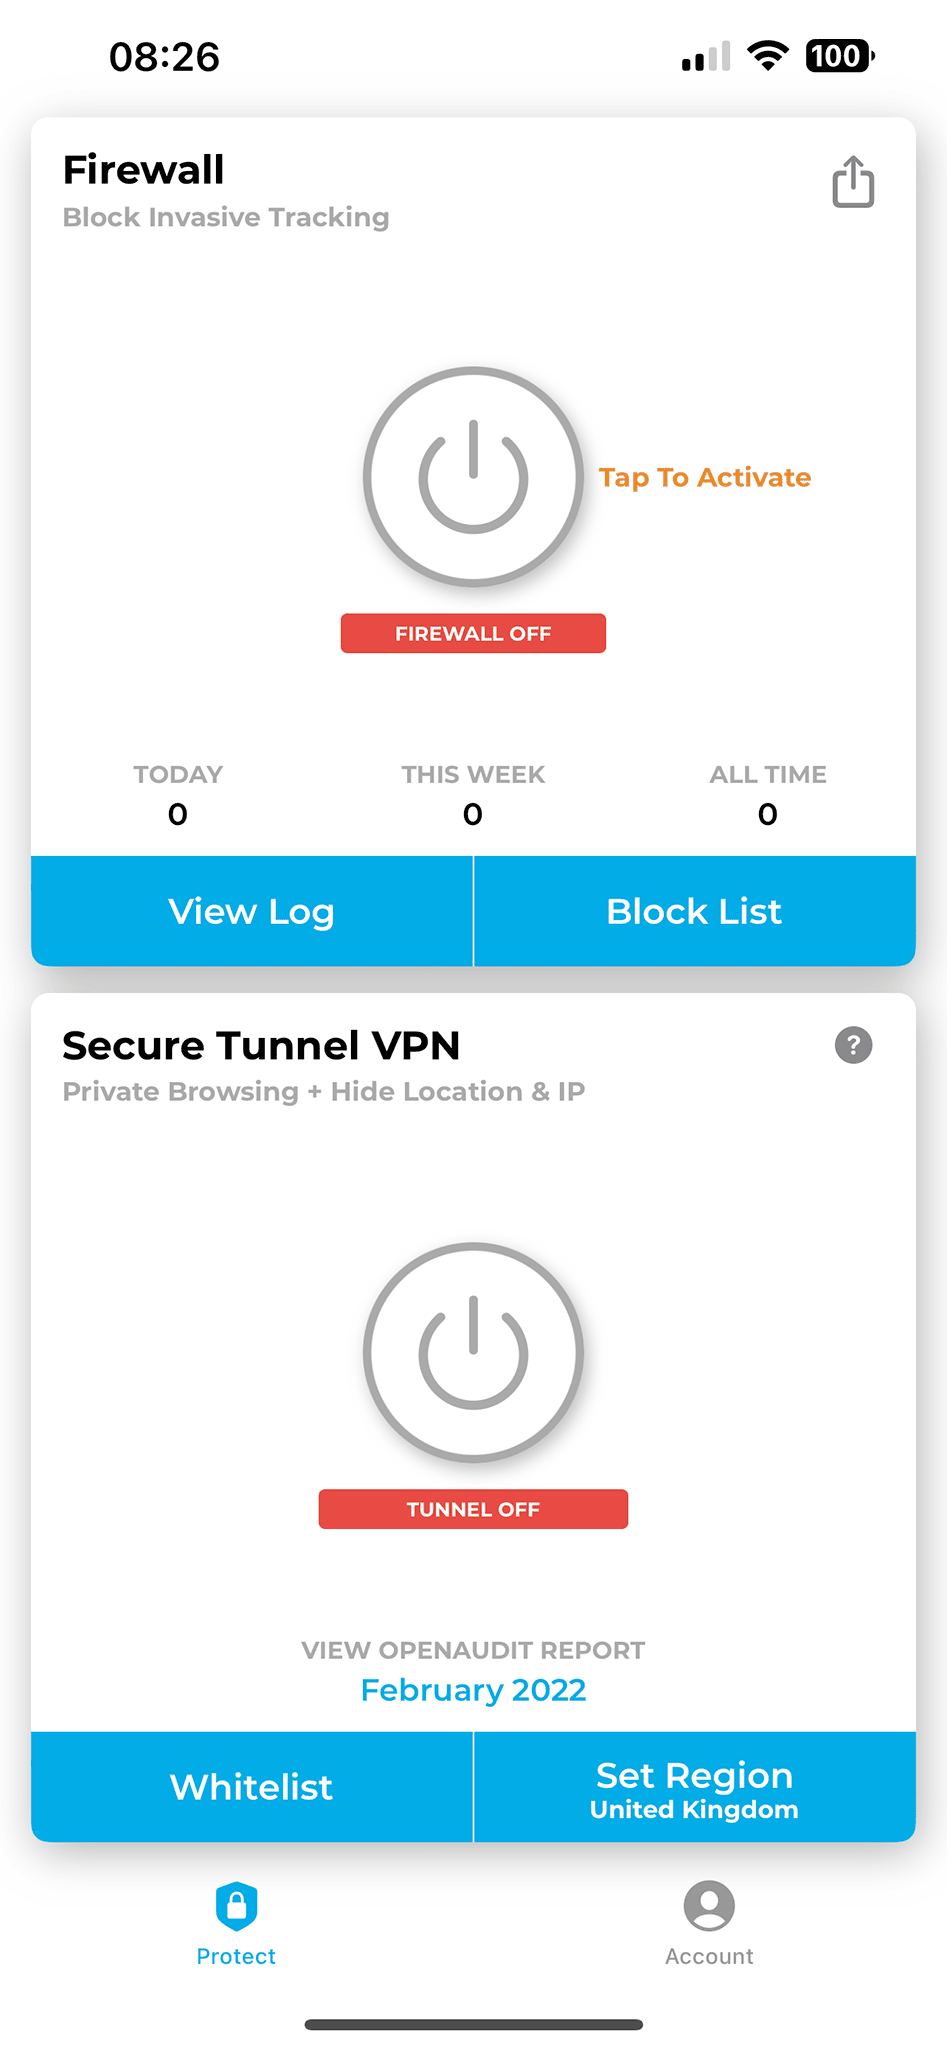 Lockdown Privacy - główne okno aplikacji z dwoma podstawowymi funkcjami - Firewall oraz Secure Tunnel VPN